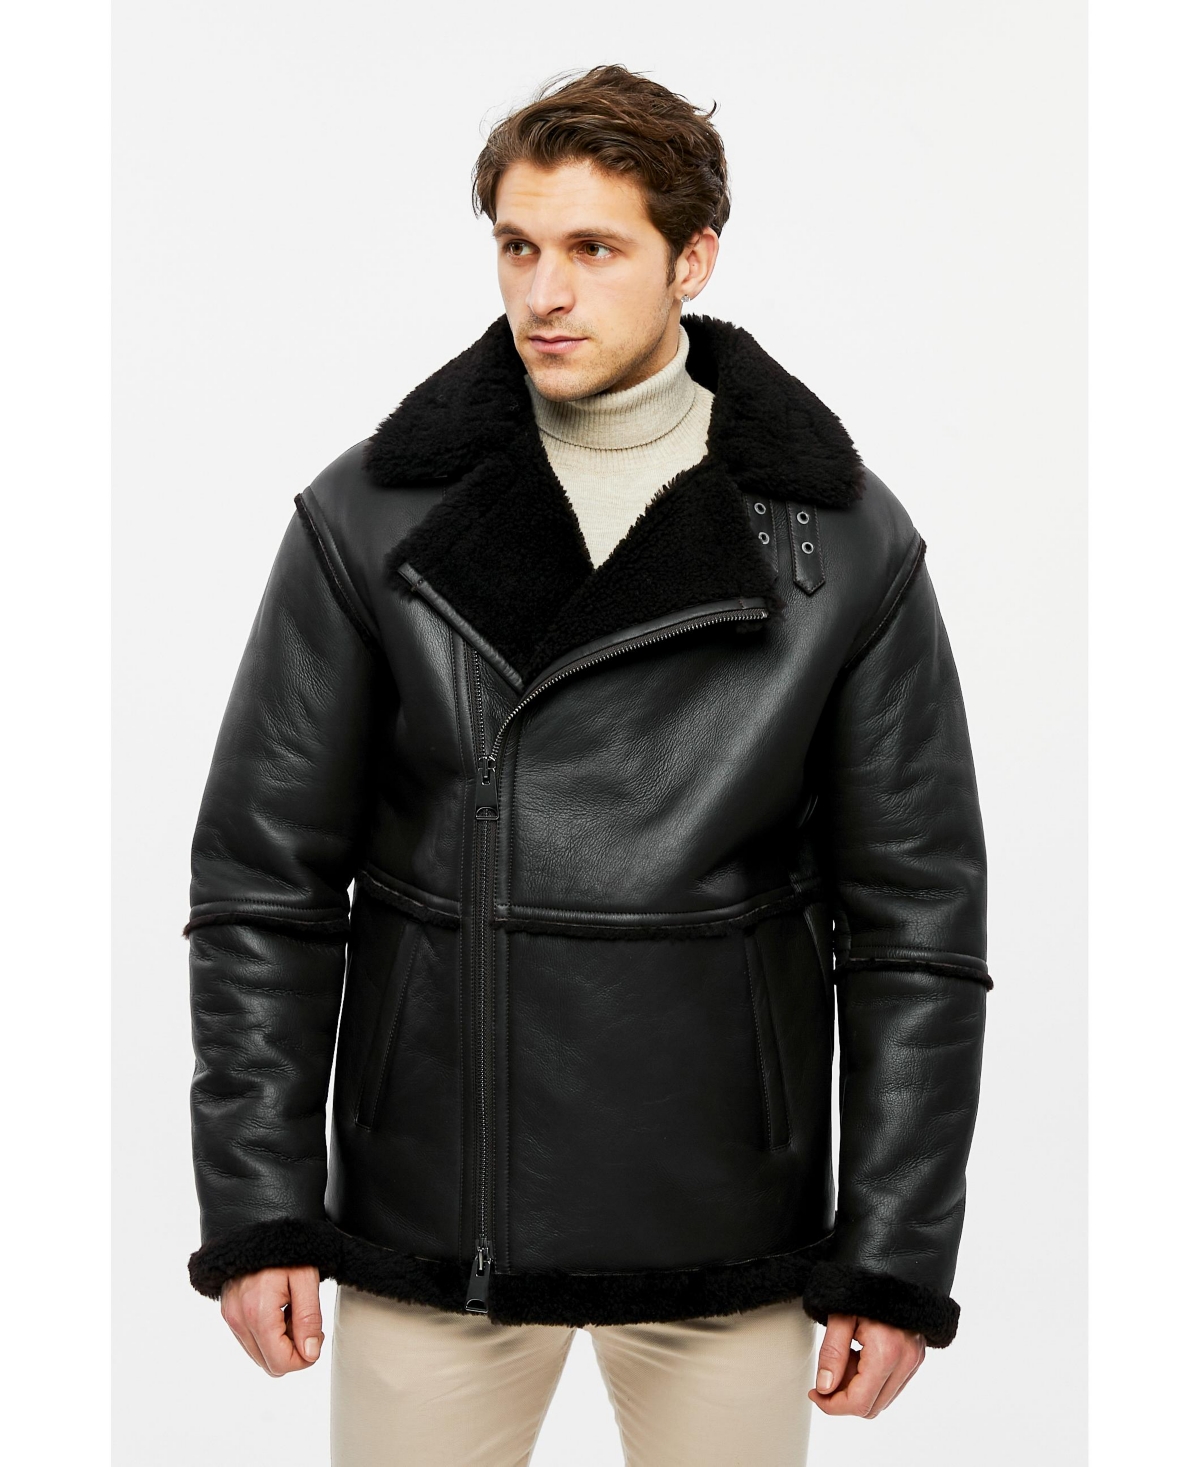 Men's Fashion Leather Jacket Wool, Dark Brown - Dark brown